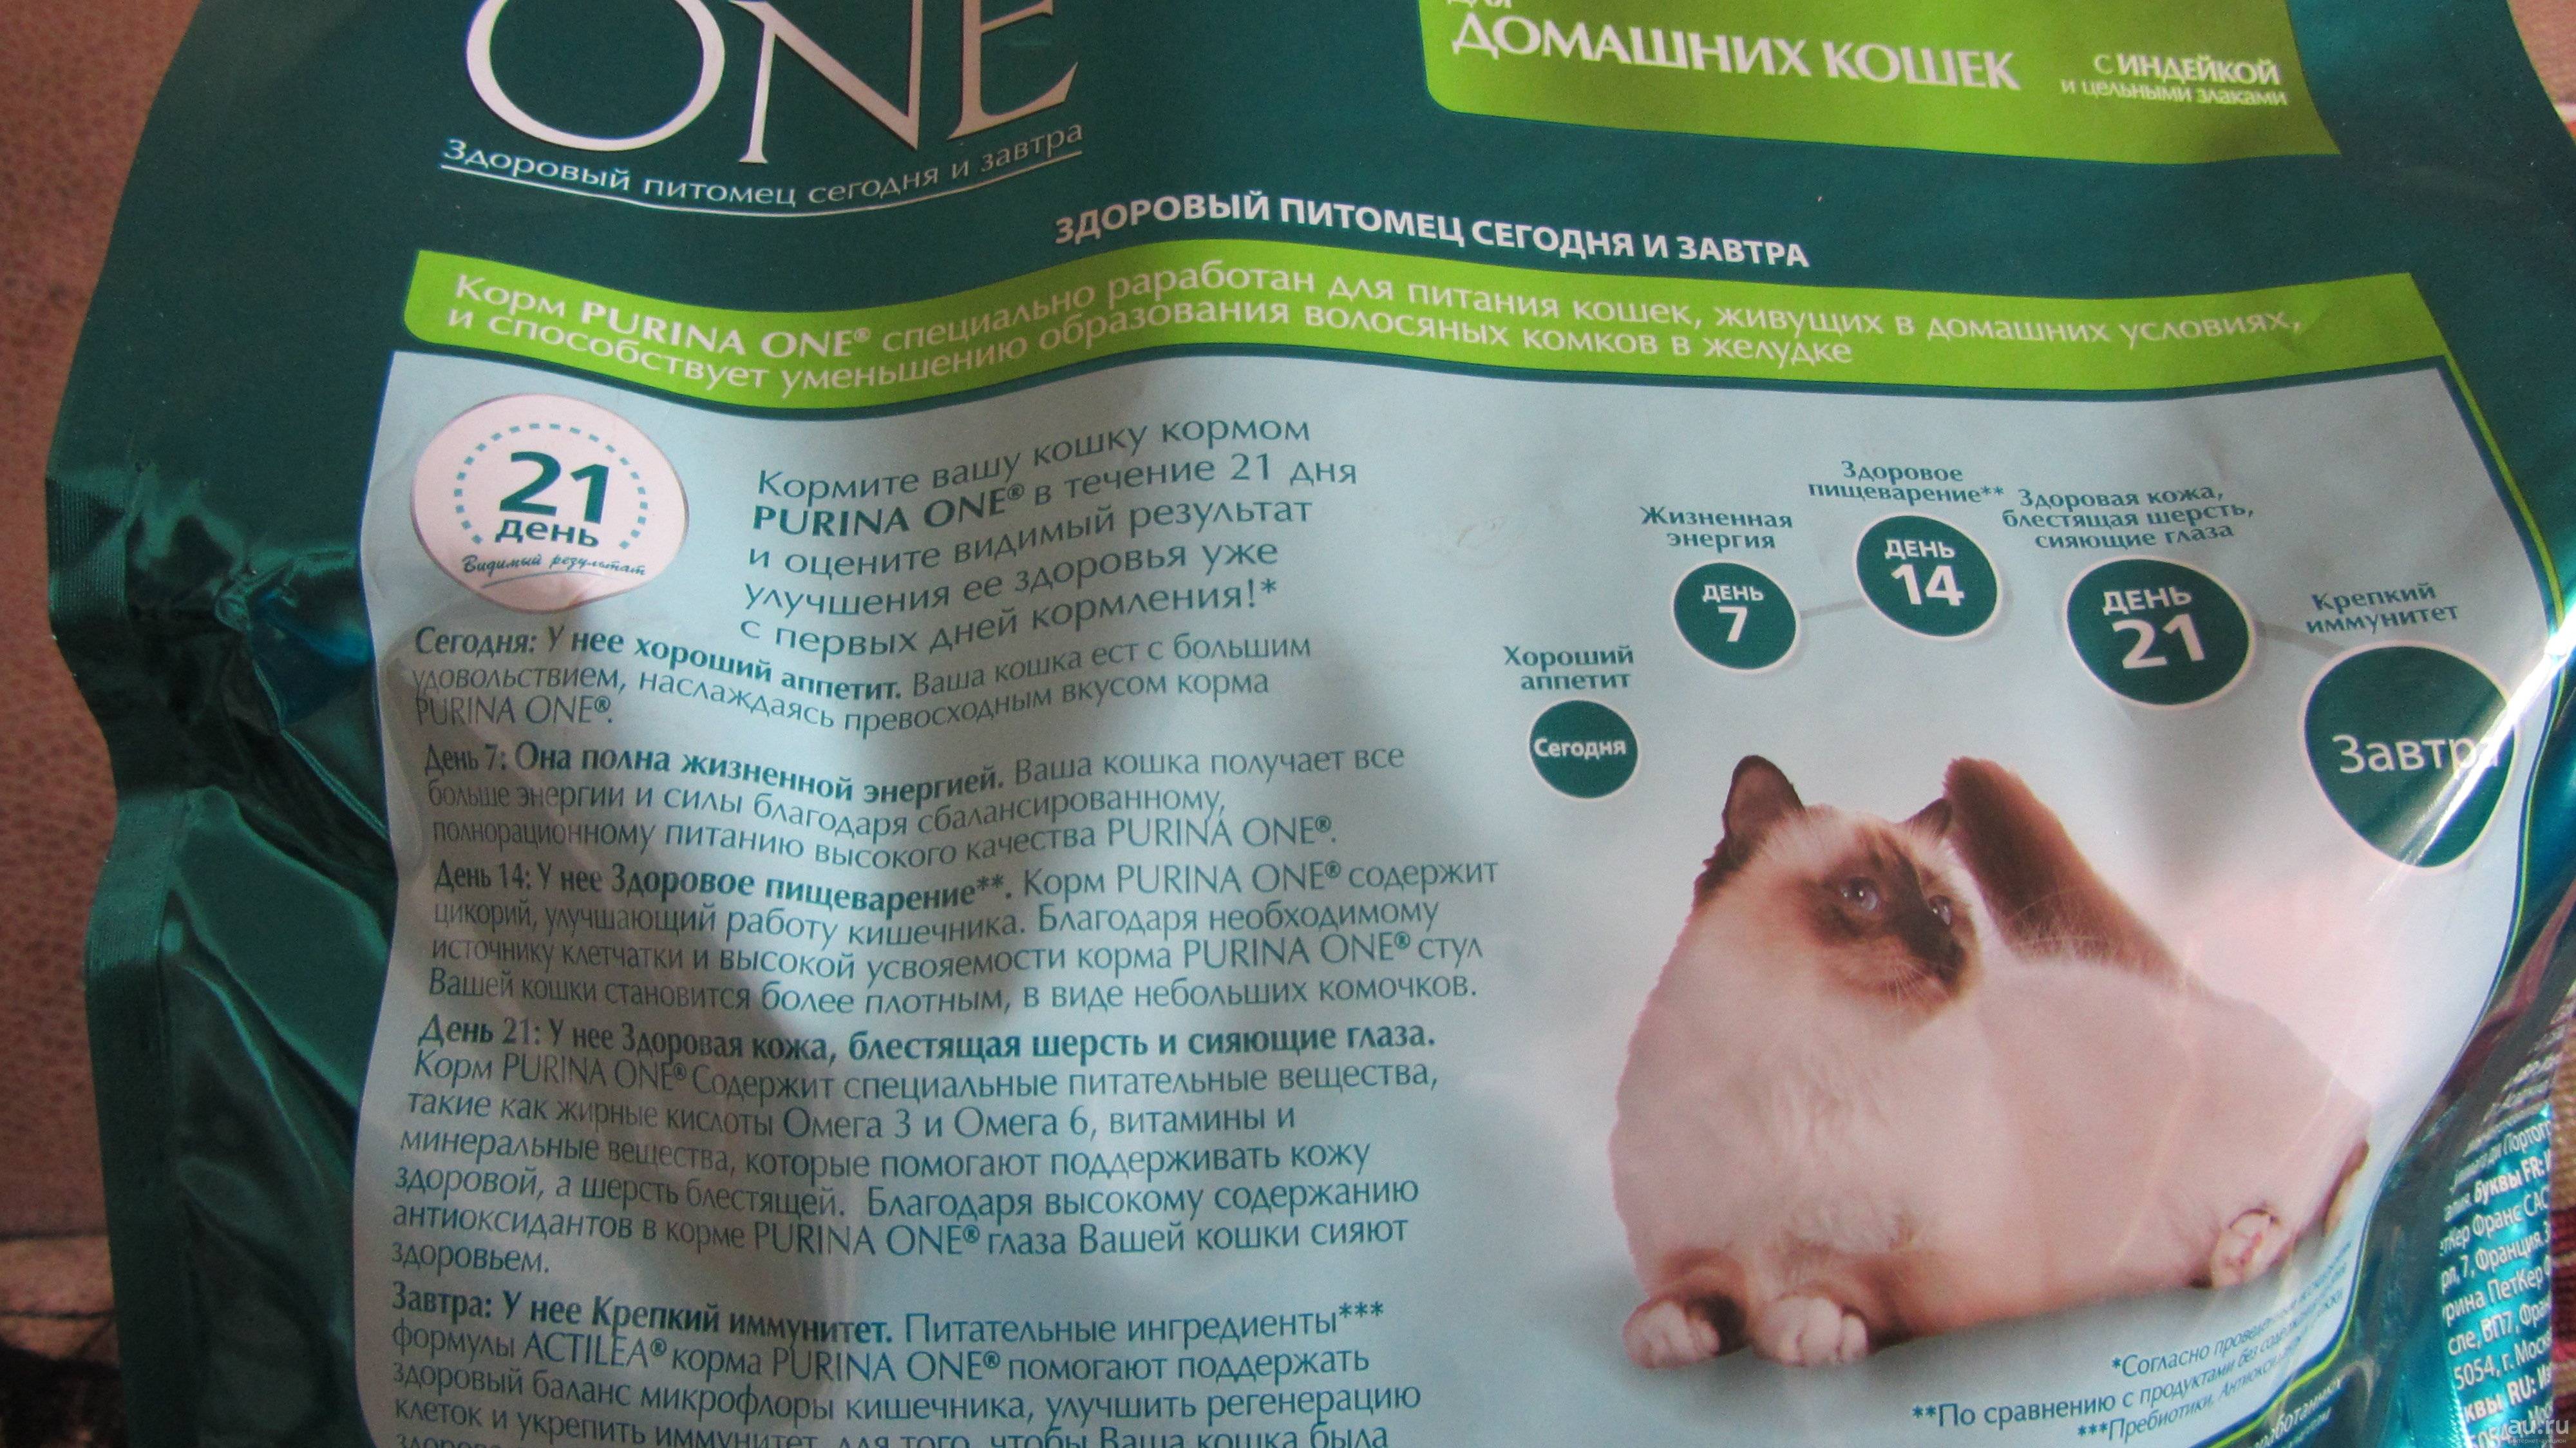 Корм для кошек пурина ван: характеристика и достоинства, состав purina one, отзывы ветеринаров и покупателей